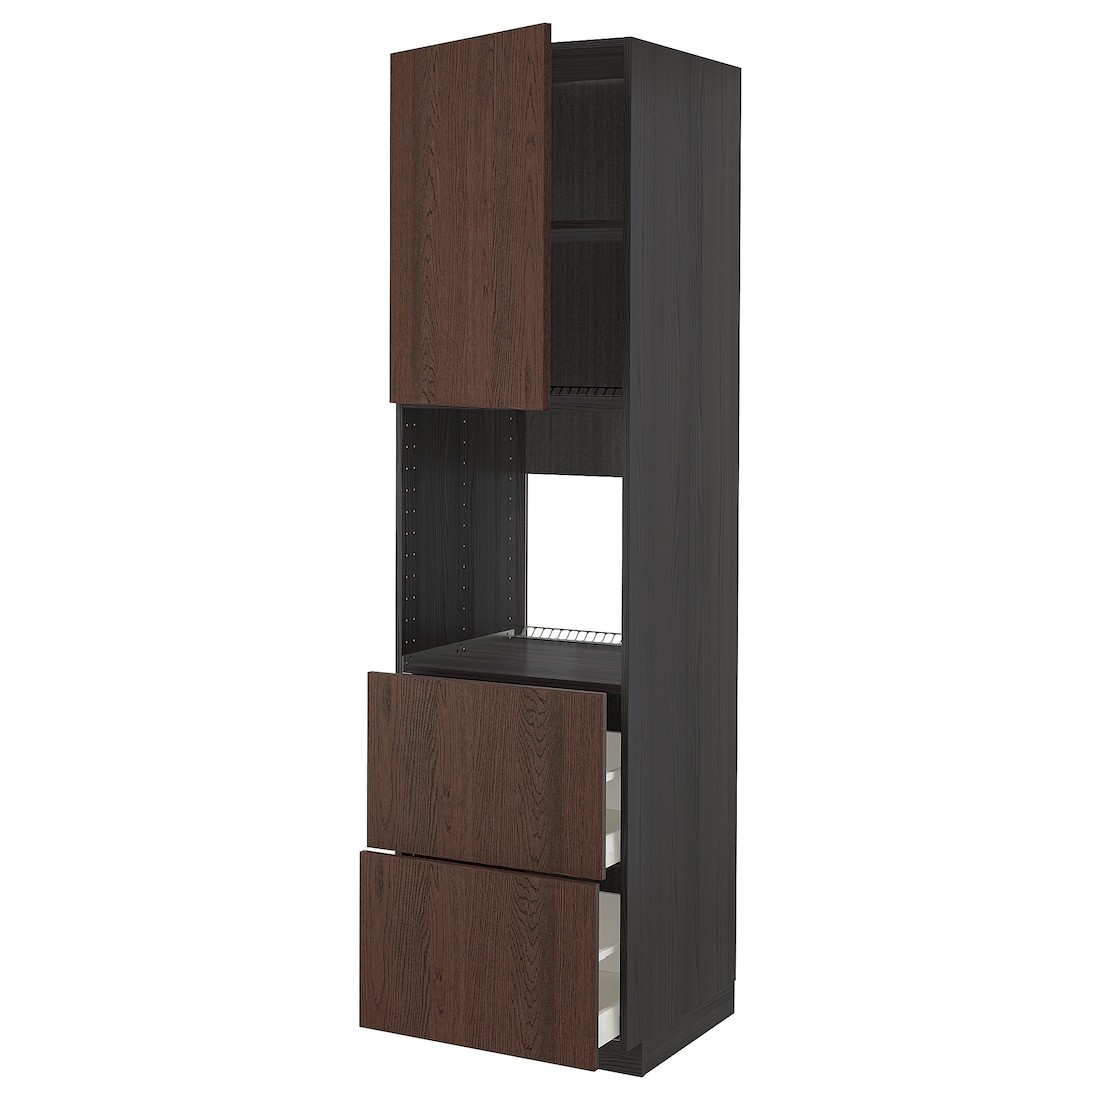 METOD МЕТОД / MAXIMERA МАКСИМЕРА Высокий шкаф для духовки с дверцей / ящиками, черный / Sinarp коричневый, 60x60x220 см